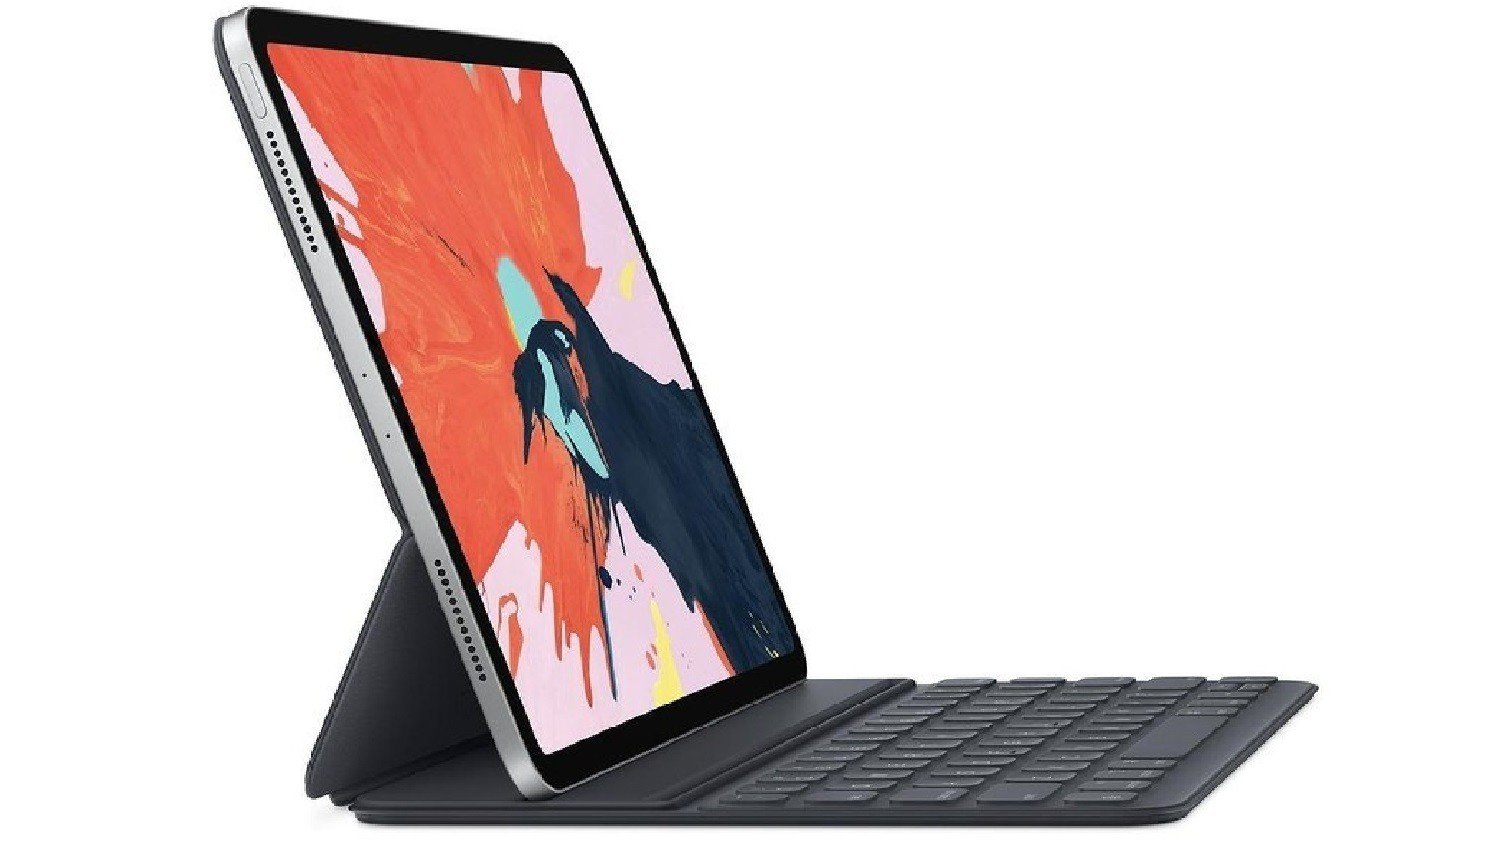 أبل تصر على أن iPad Pro 2018 جهاز كمبيوتر متكامل